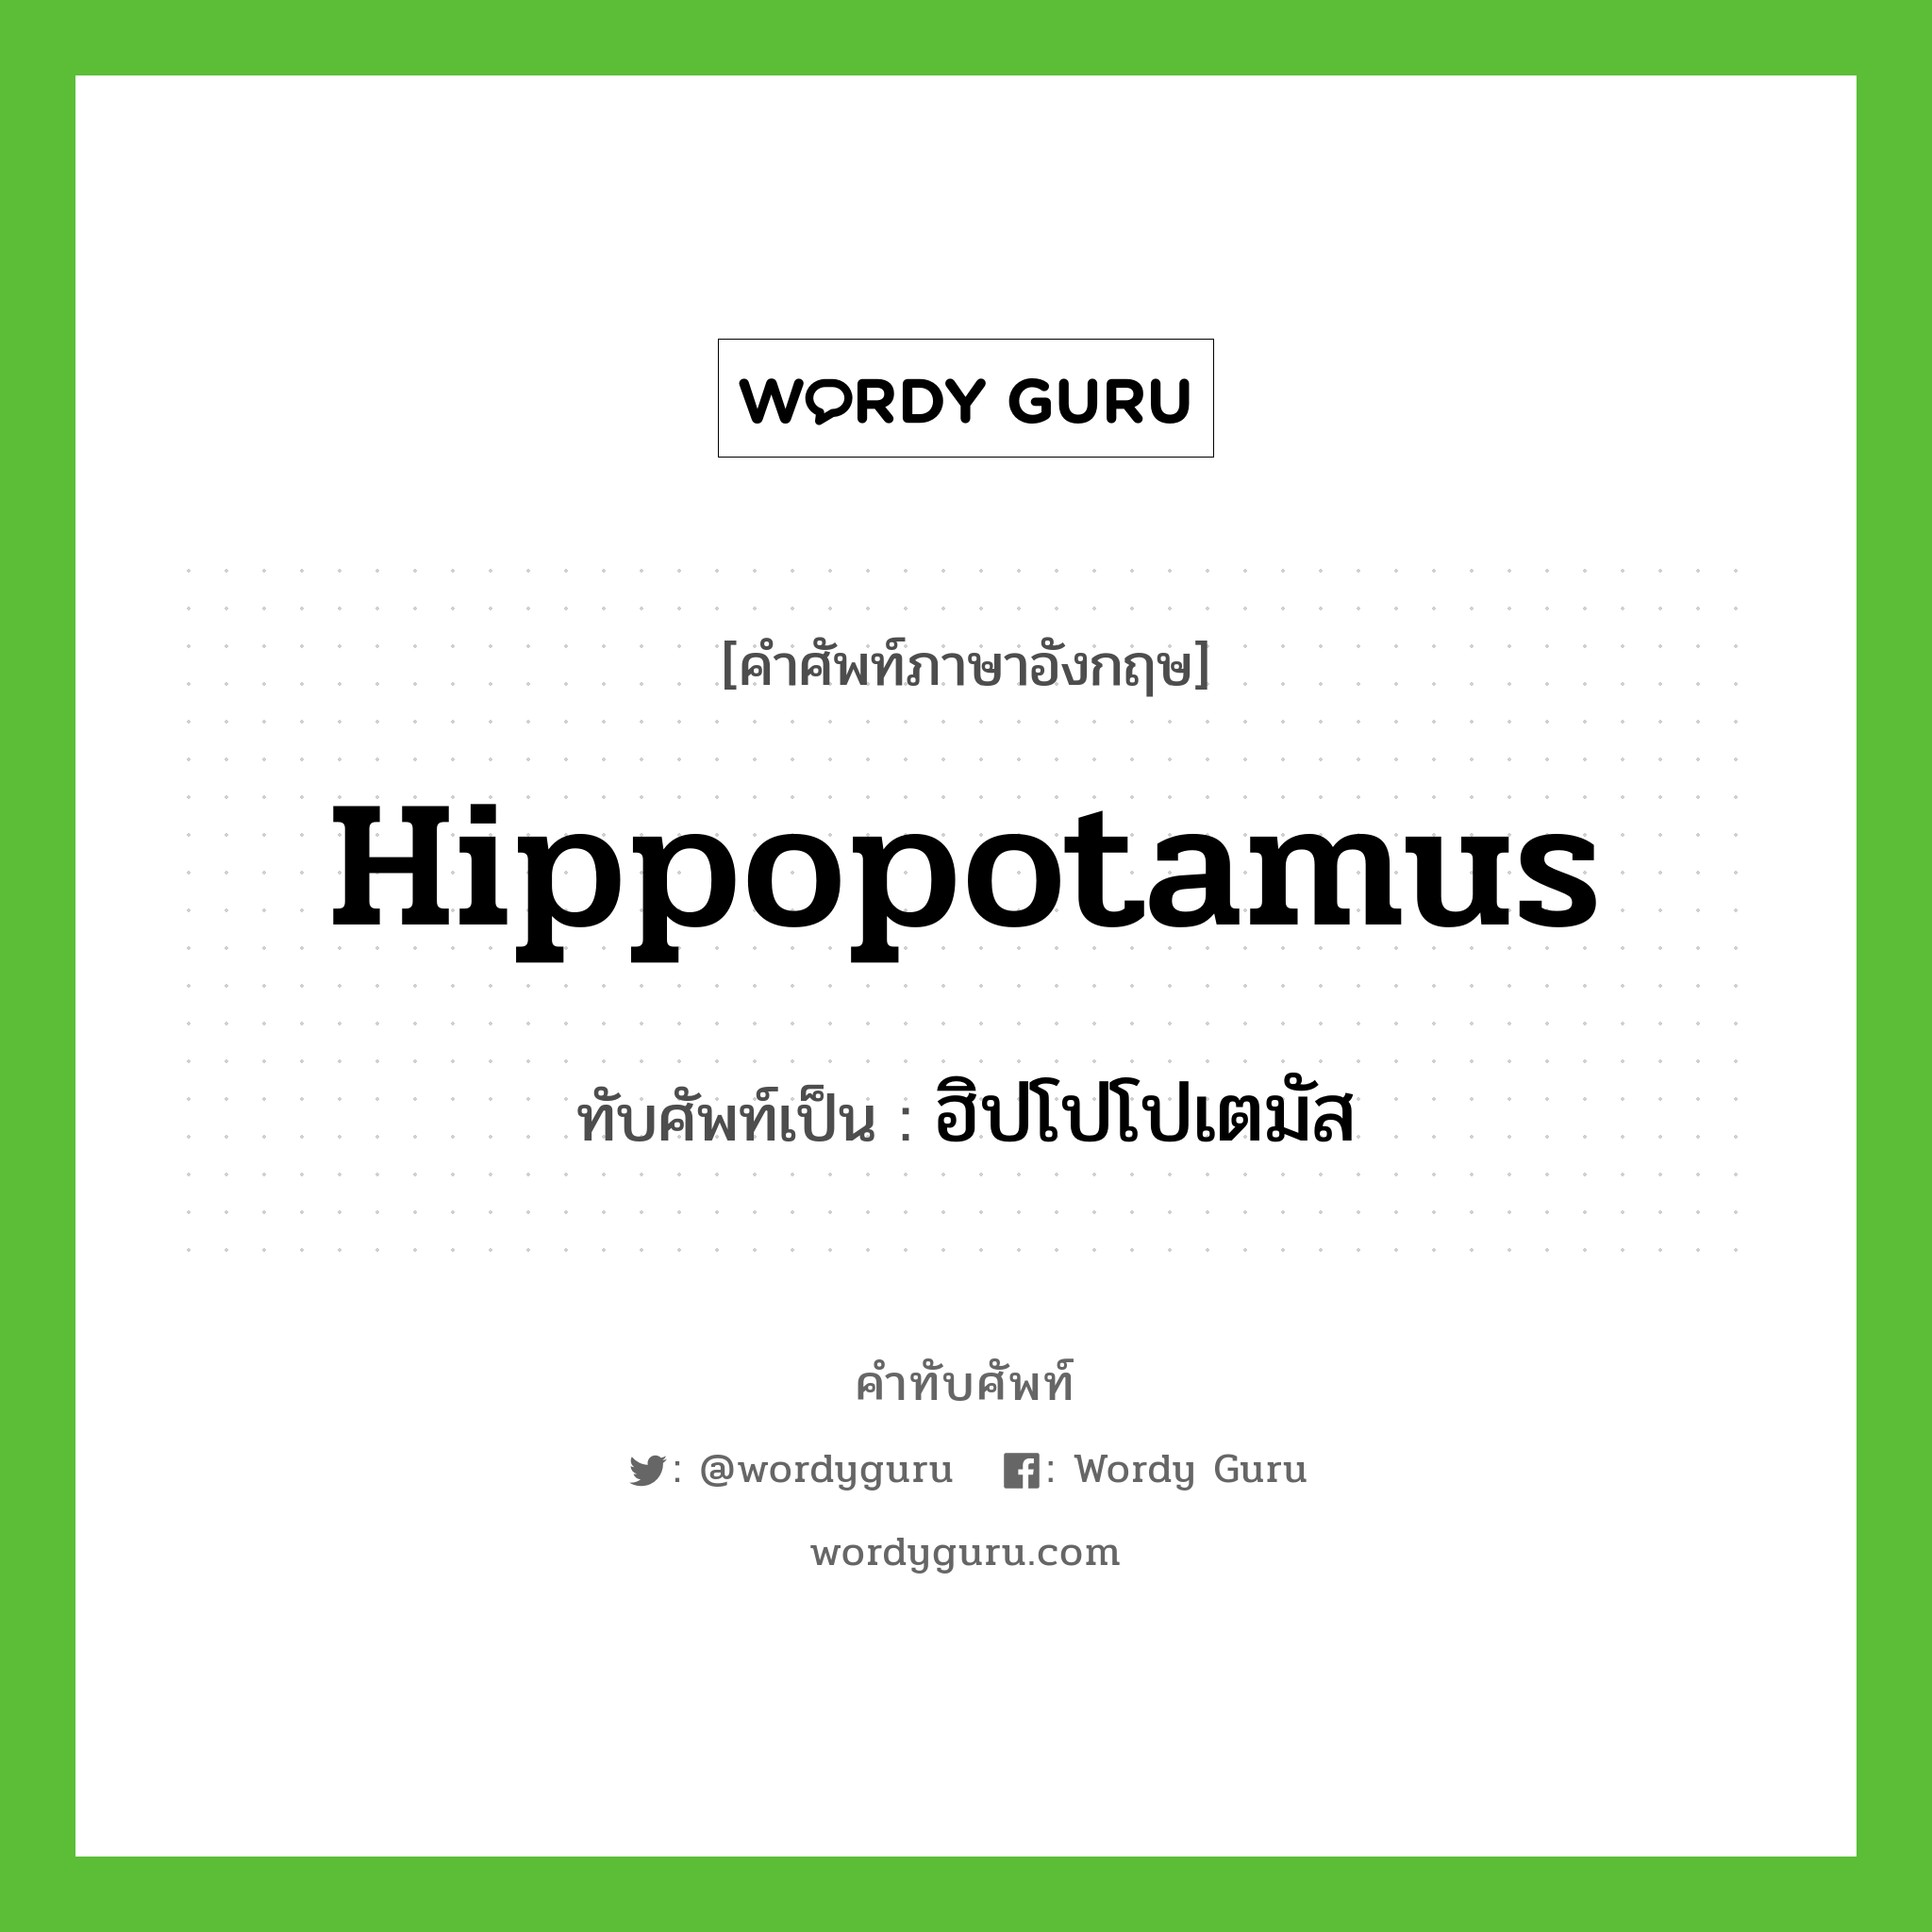 hippopotamus เขียนเป็นคำไทยว่าอะไร?, คำศัพท์ภาษาอังกฤษ hippopotamus ทับศัพท์เป็น ฮิปโปโปเตมัส